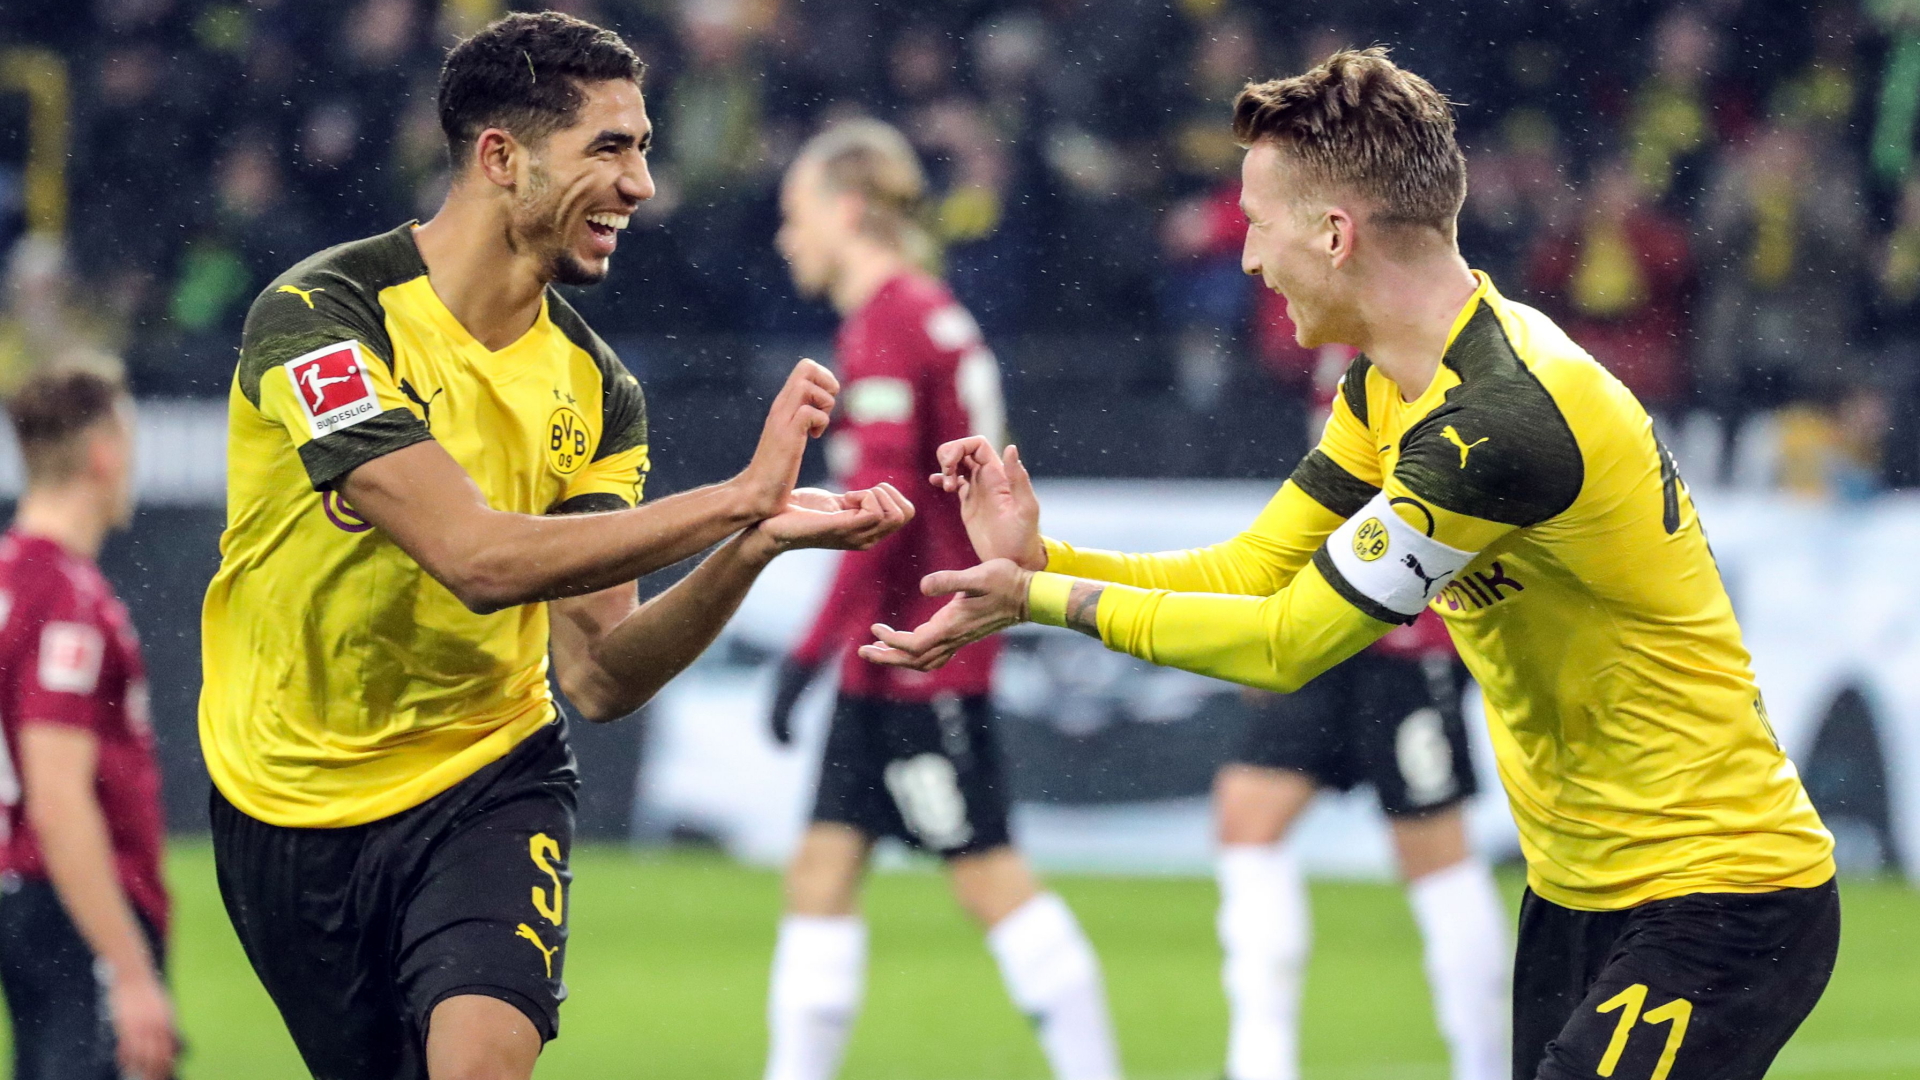 Achraf Hakimi von Borussia Dortmund (links) freut sich mit Teamkollegen Marco Reus über sein Tor im Spiel gegen Hannover. | Bildquelle: ARMANDO BABANI/EPA-EFE/REX